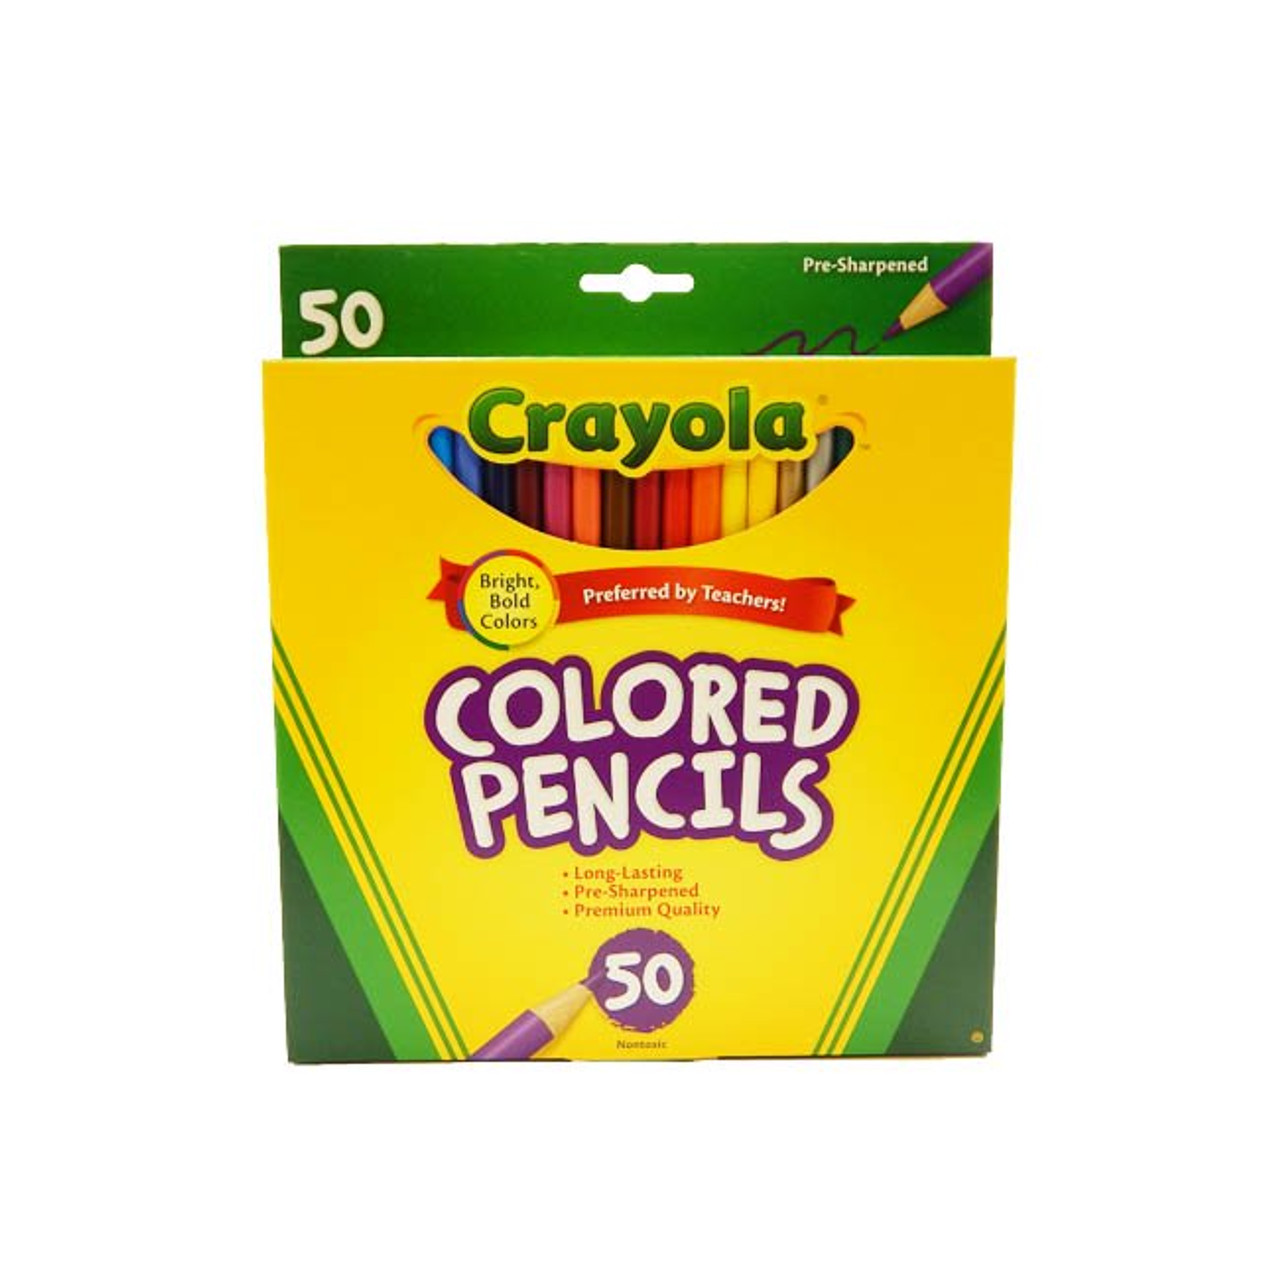 Crayola erasable colored pencils bulk 24 GREEN